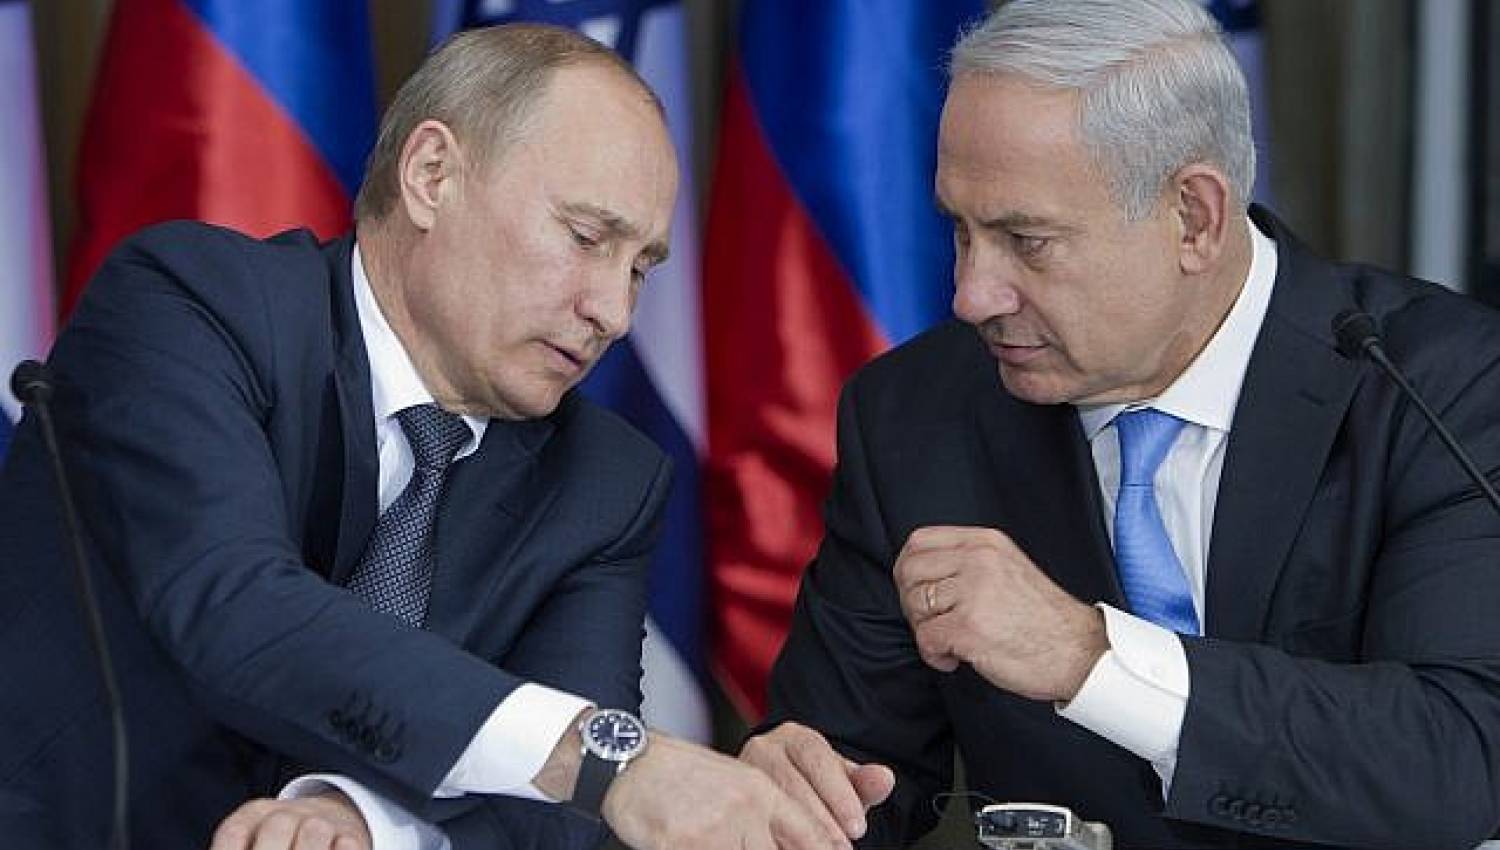 لدى روسيا فرصة لتصحيح موقفها من فلسطين